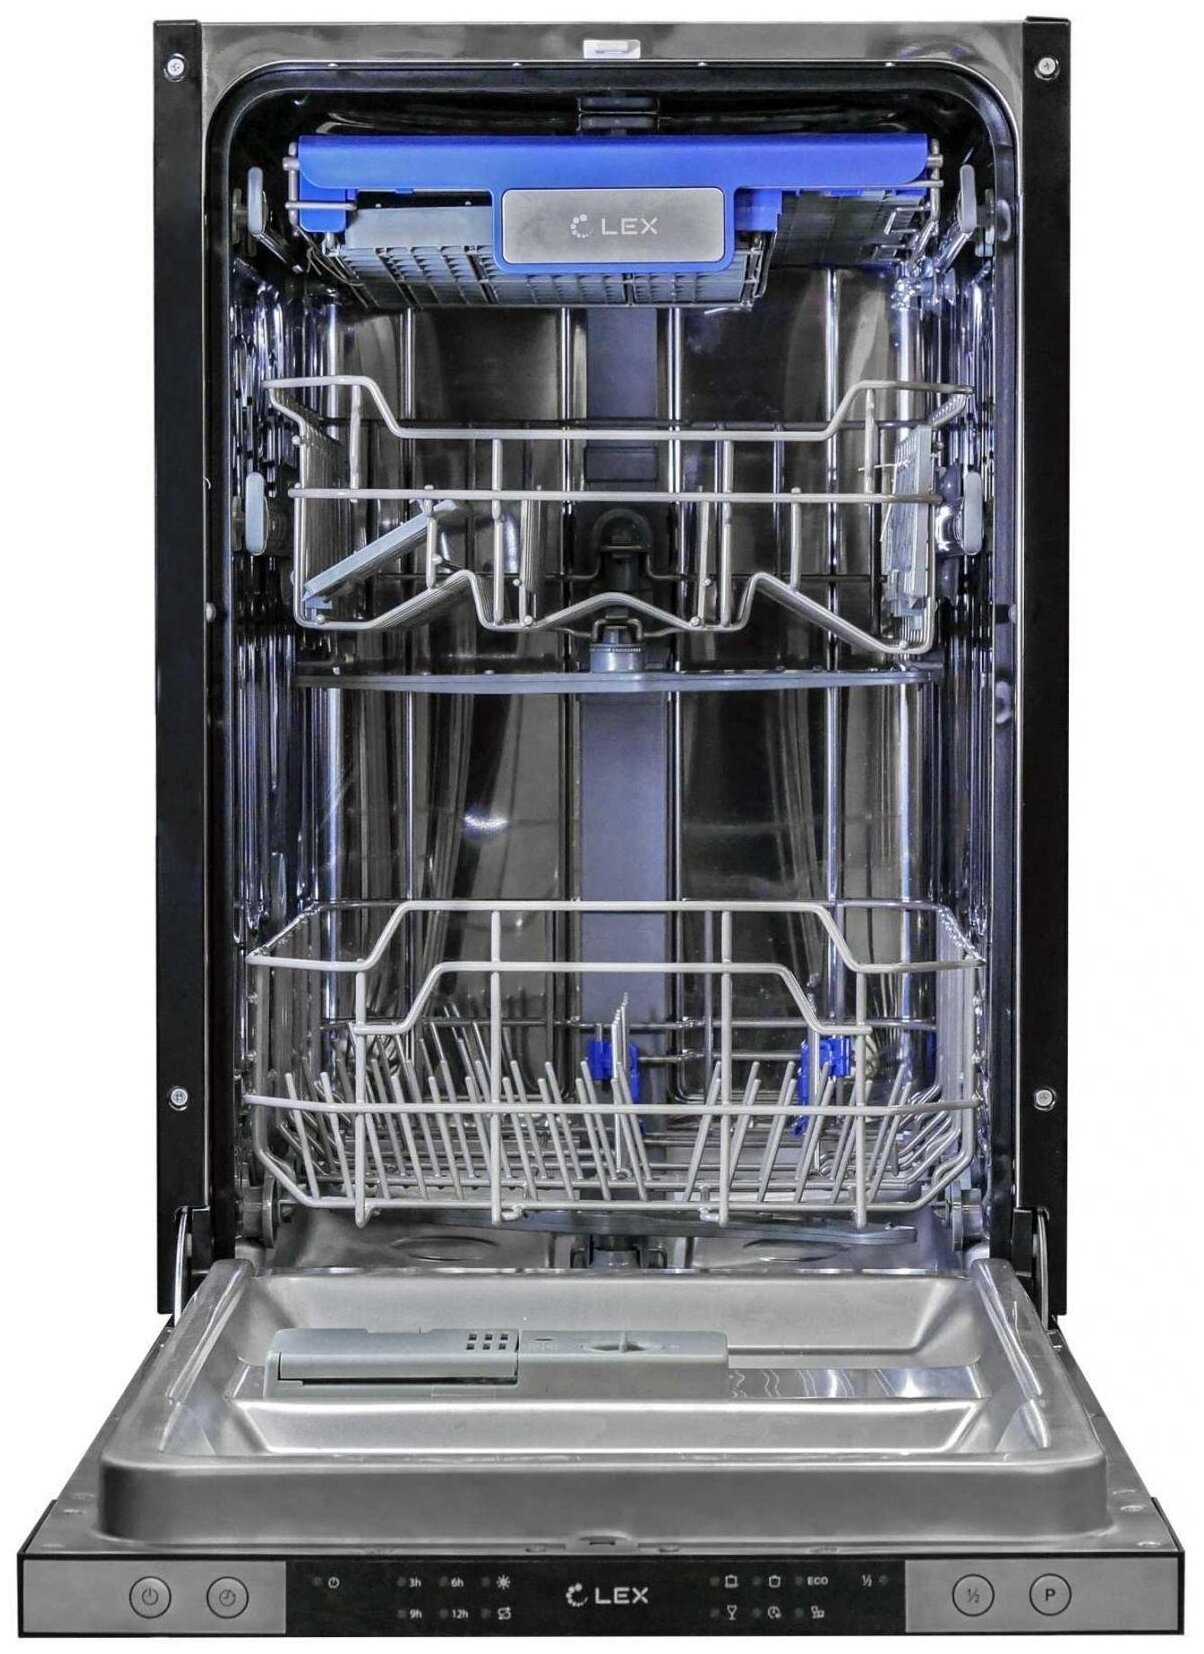 Встраиваемая посудомоечная машина черная. Встраиваемая посудомоечная машина Lex PM 4563 B. Посудомоечная машина Lex PM 4563 A. Встраиваемая посудомоечная машина Ginzzu dc508. Посудомоечная машина Lex PM 4563 размер.